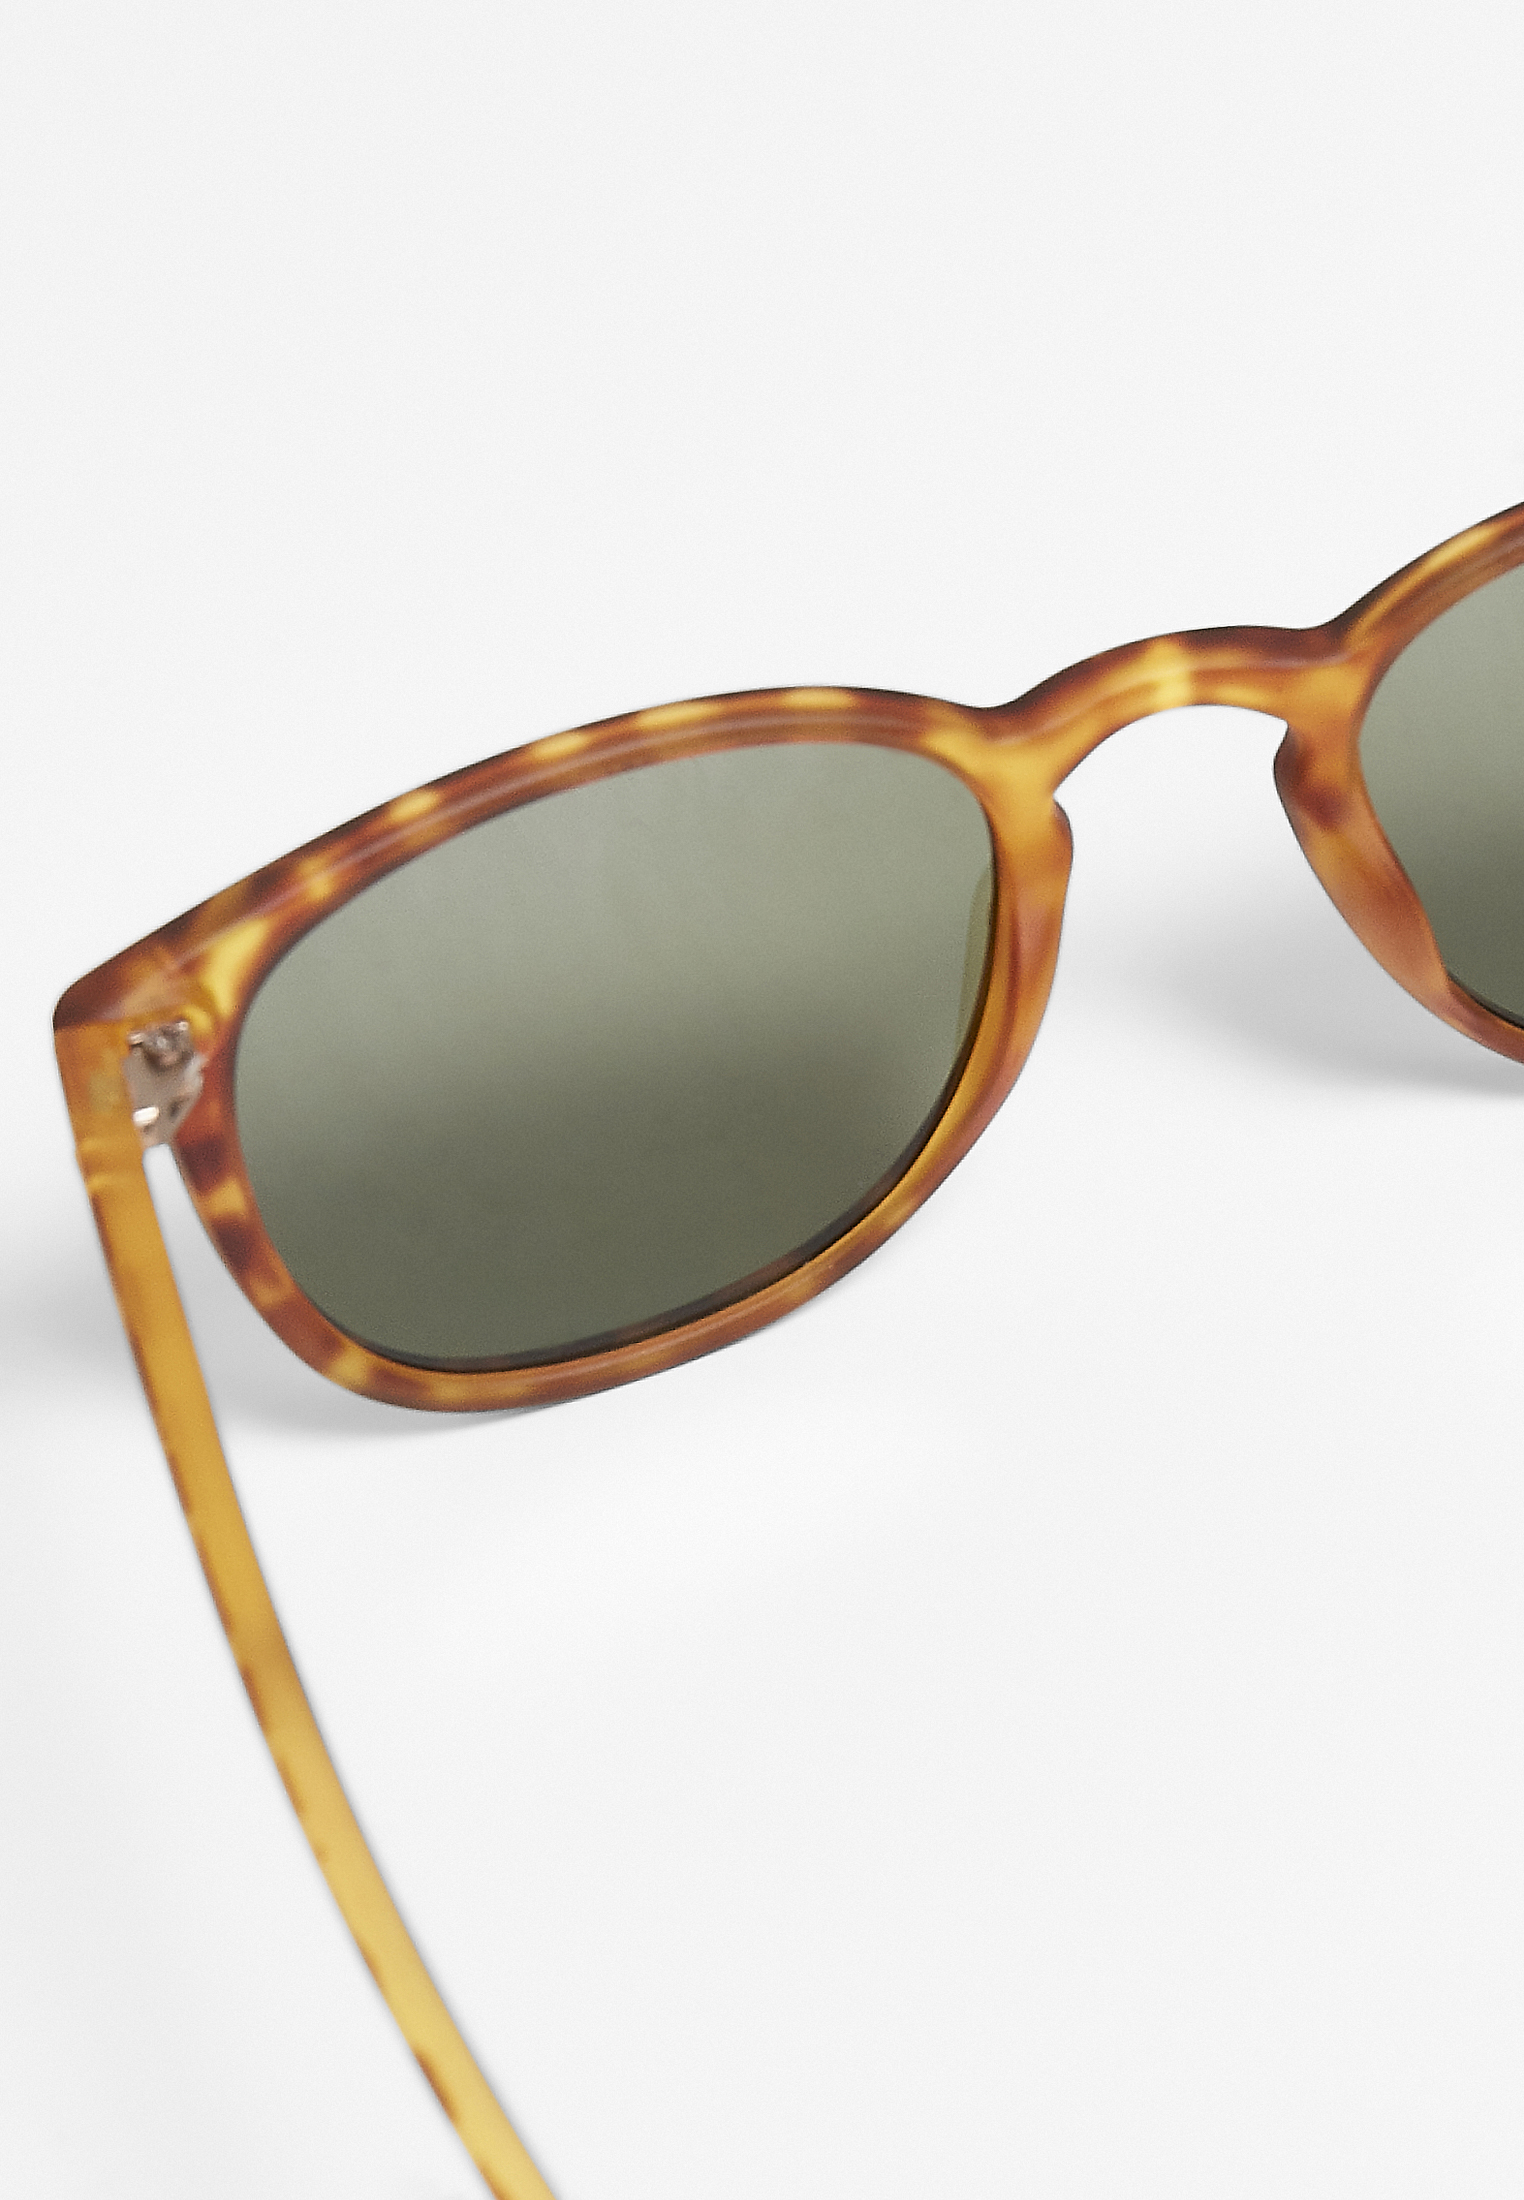 Sonnenbrillen Sunglasses Arthur UC in Farbe brown leo/green